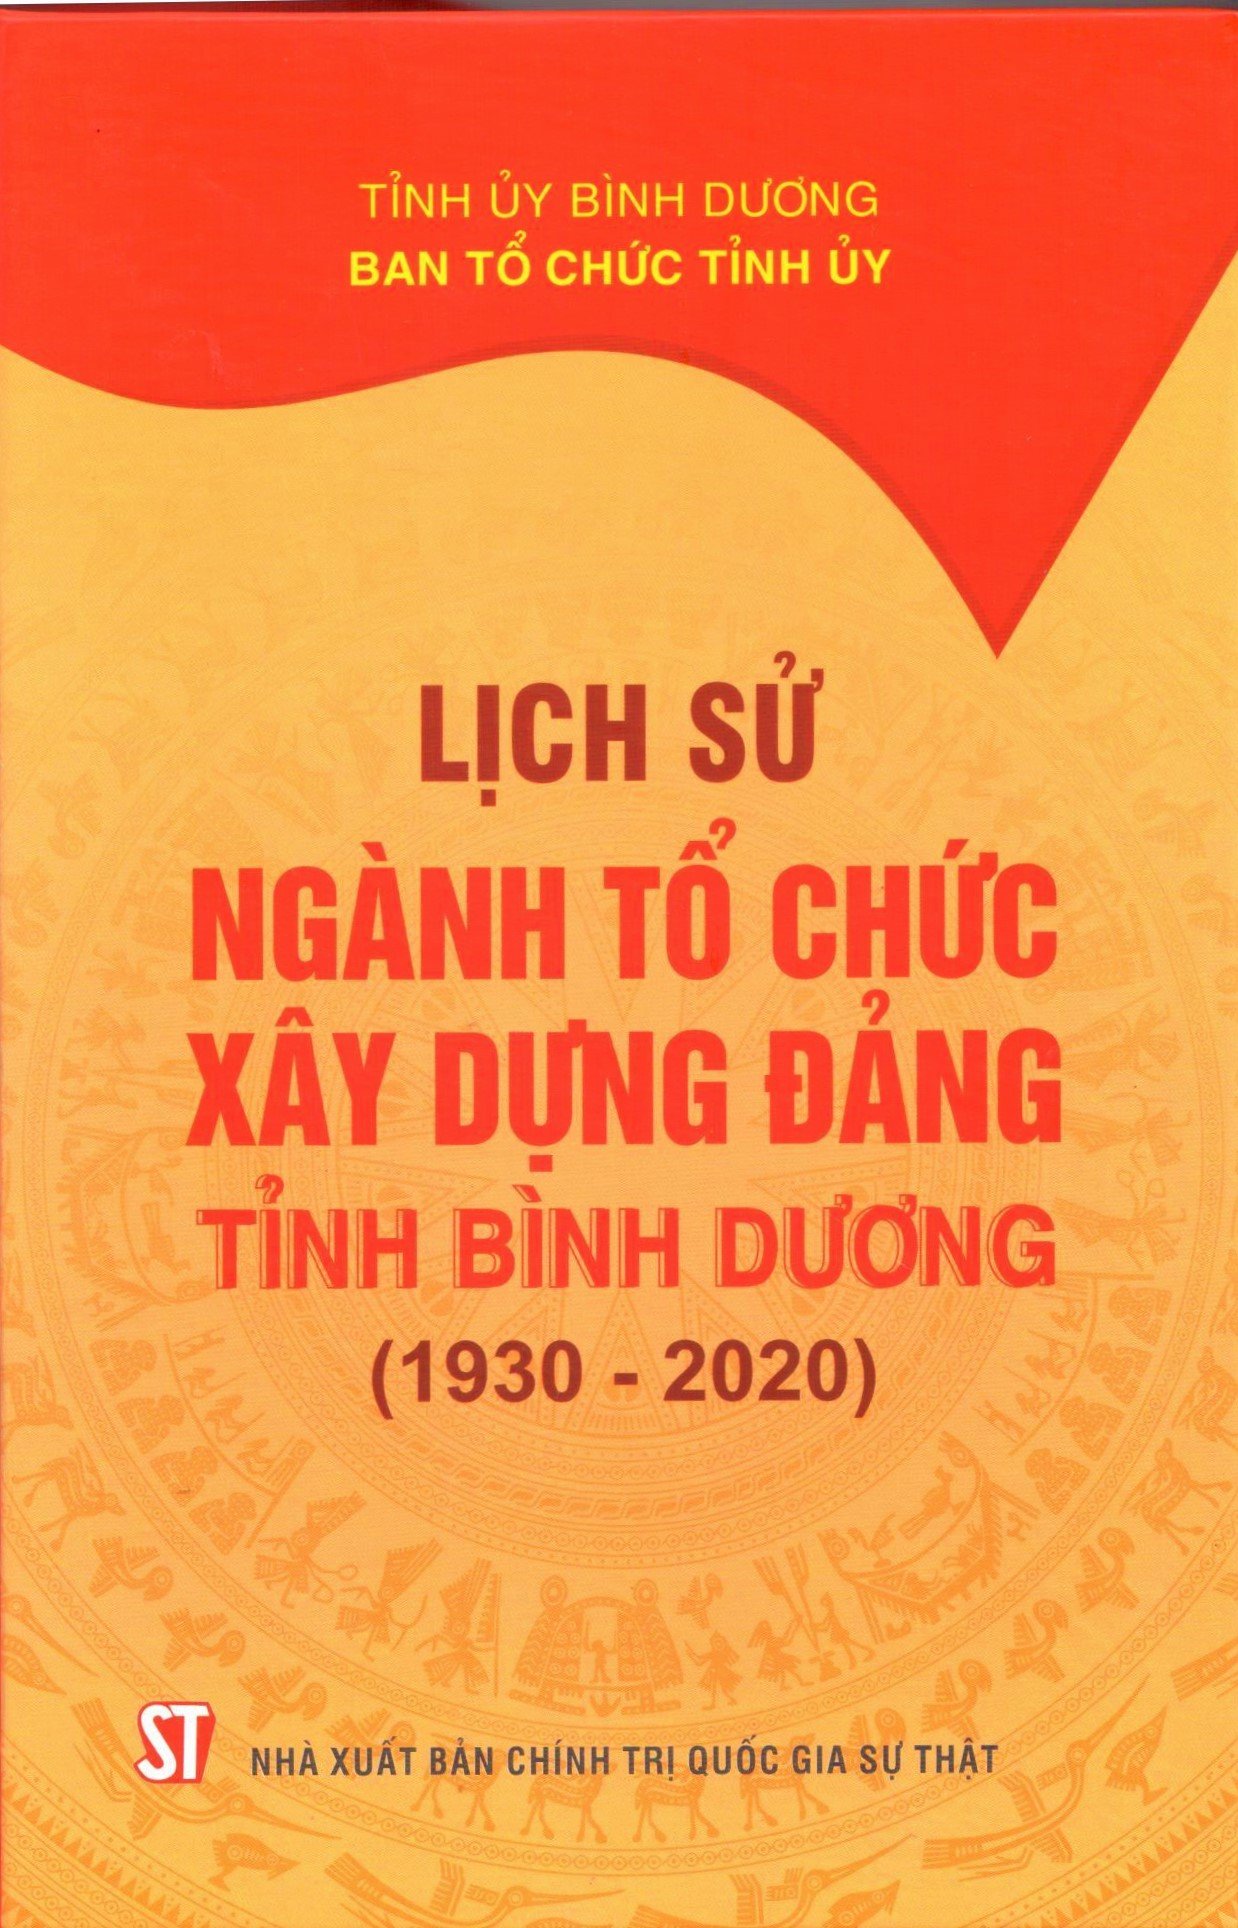 Lịch sử ngành Tổ chức xây dựng Đảng tỉnh Bình Dương (1930 - 2020)